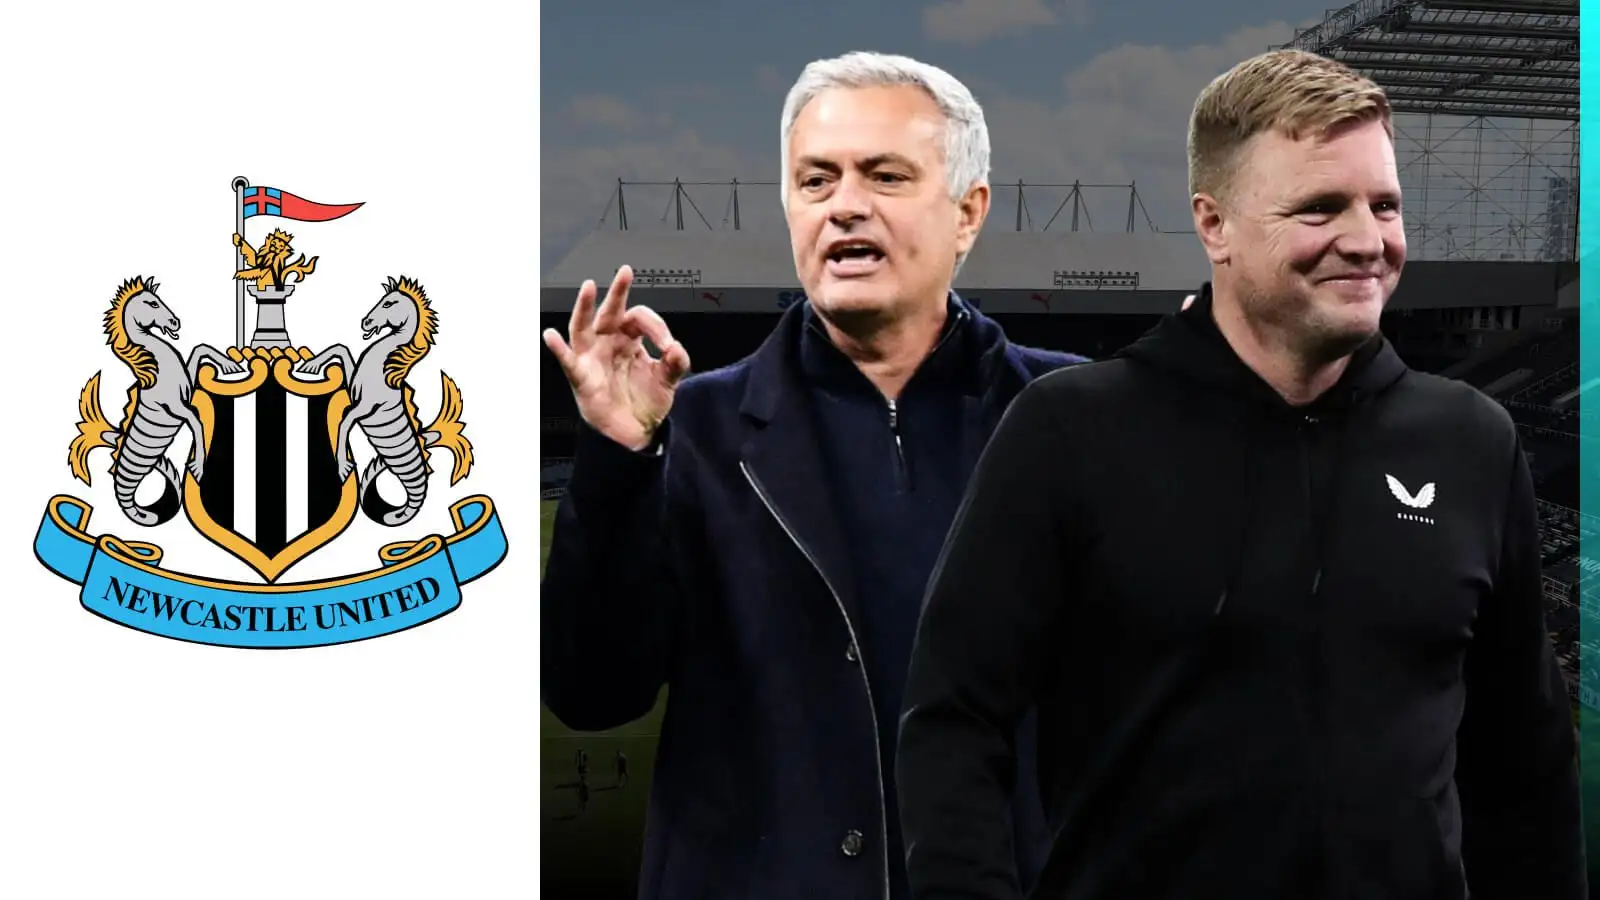 Newcastle-linked Mourinho